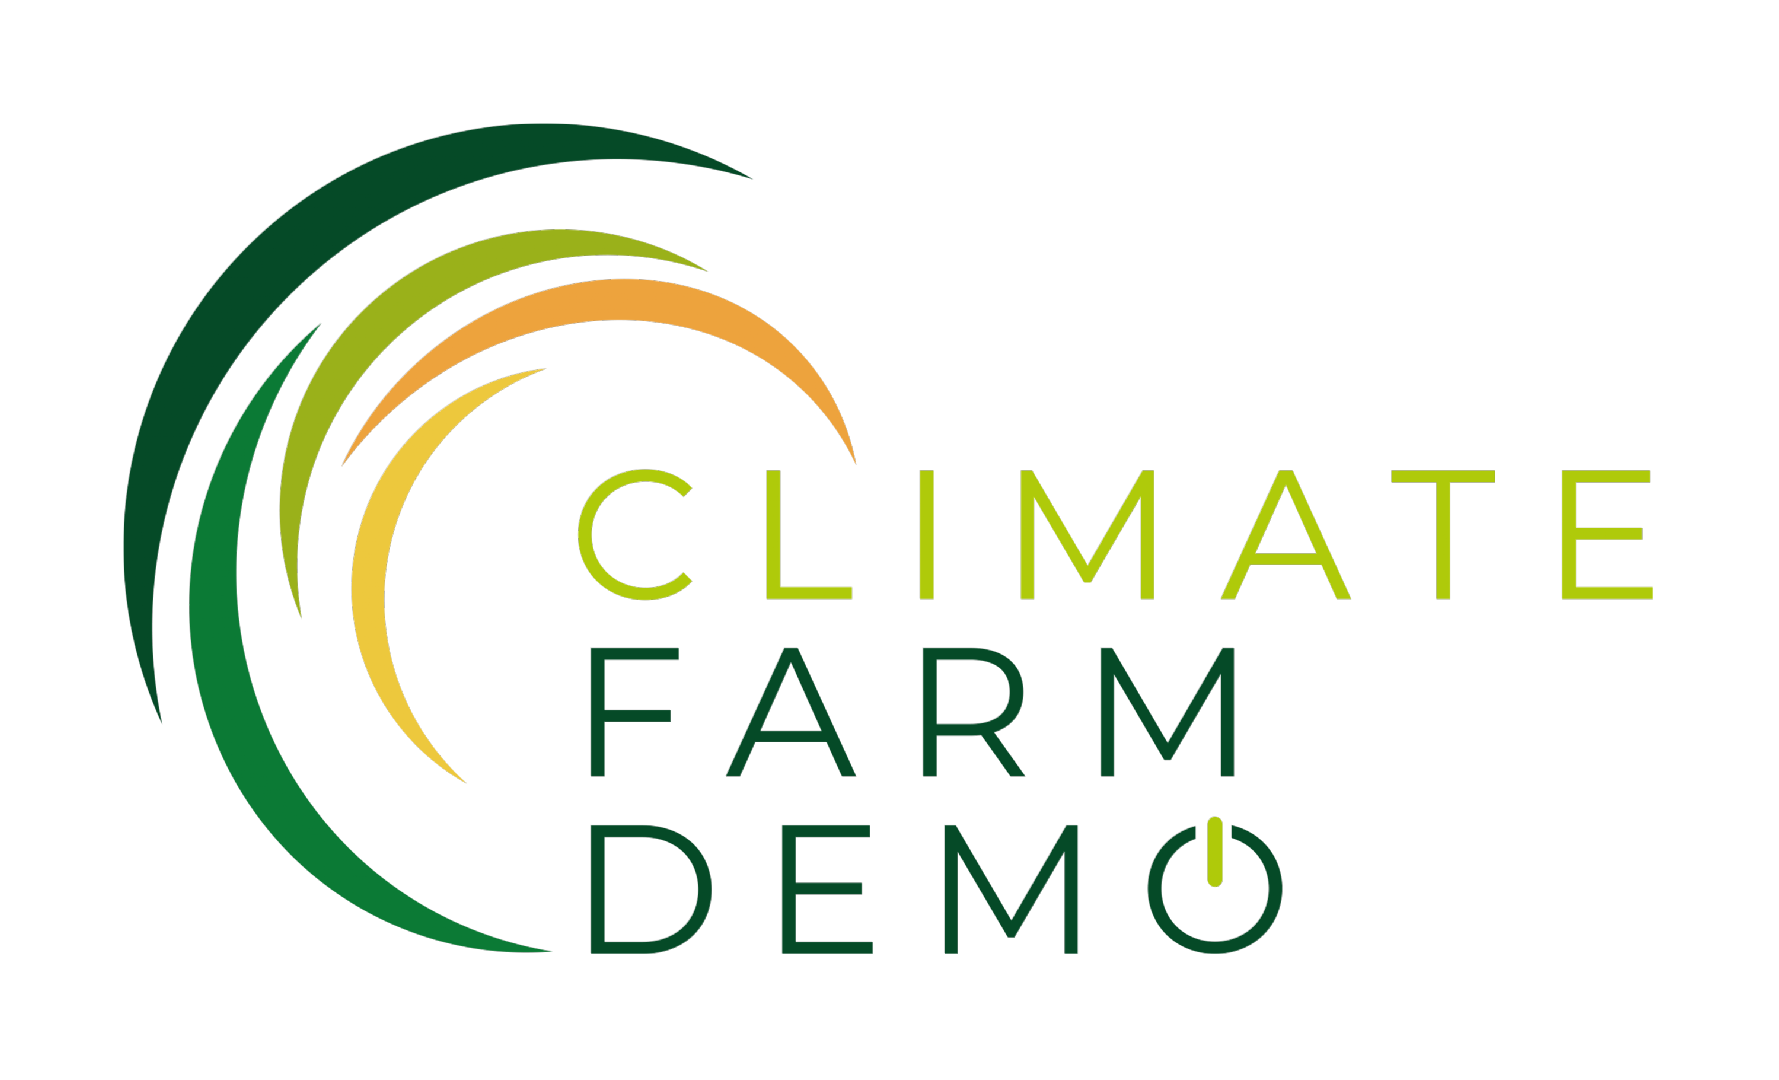 Climate Farm Demo